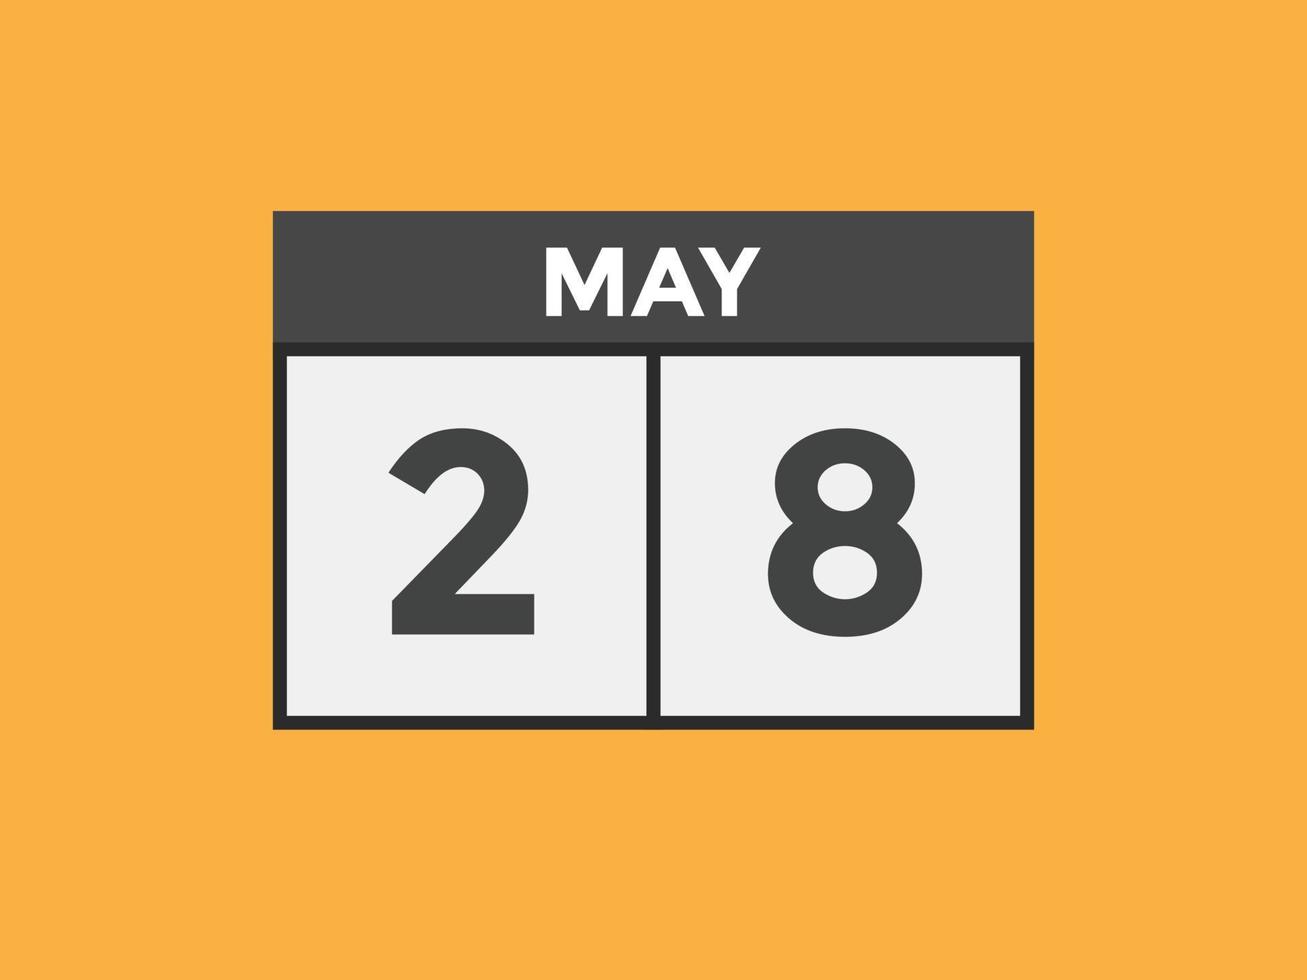 28 de maio lembrete de calendário. 28 de maio modelo de ícone de calendário diário. calendário 28 de maio modelo de design de ícone. ilustração vetorial vetor